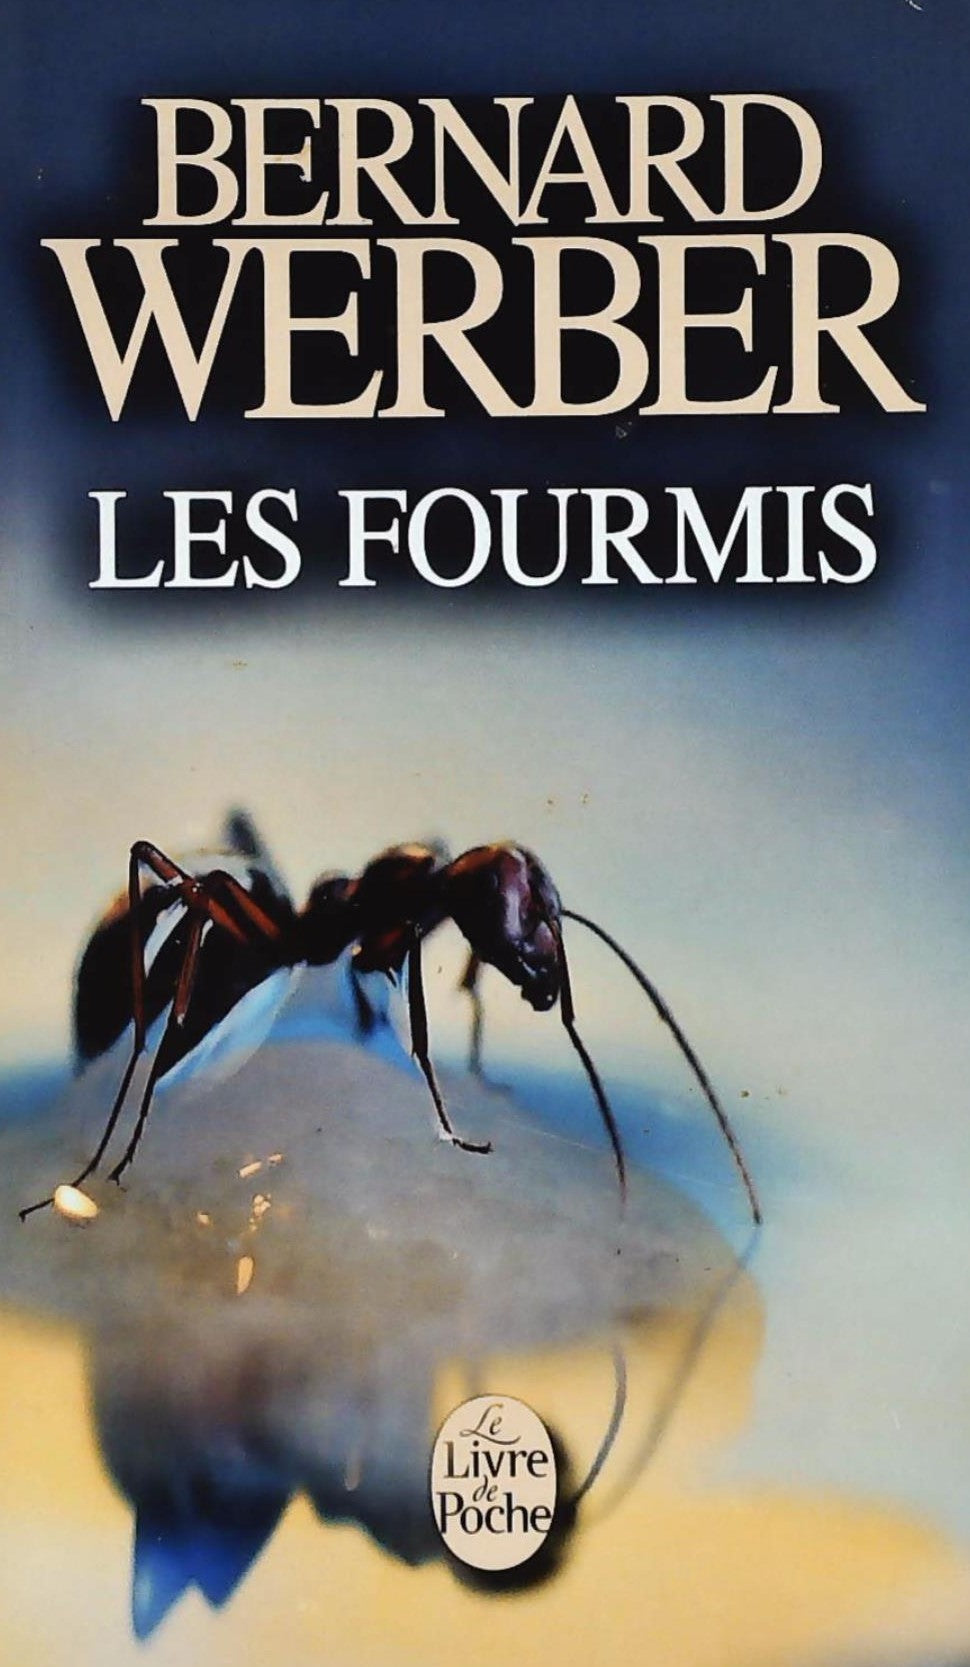 Le cycle des fourmis # 1 : Les fourmis - Bernard Werber